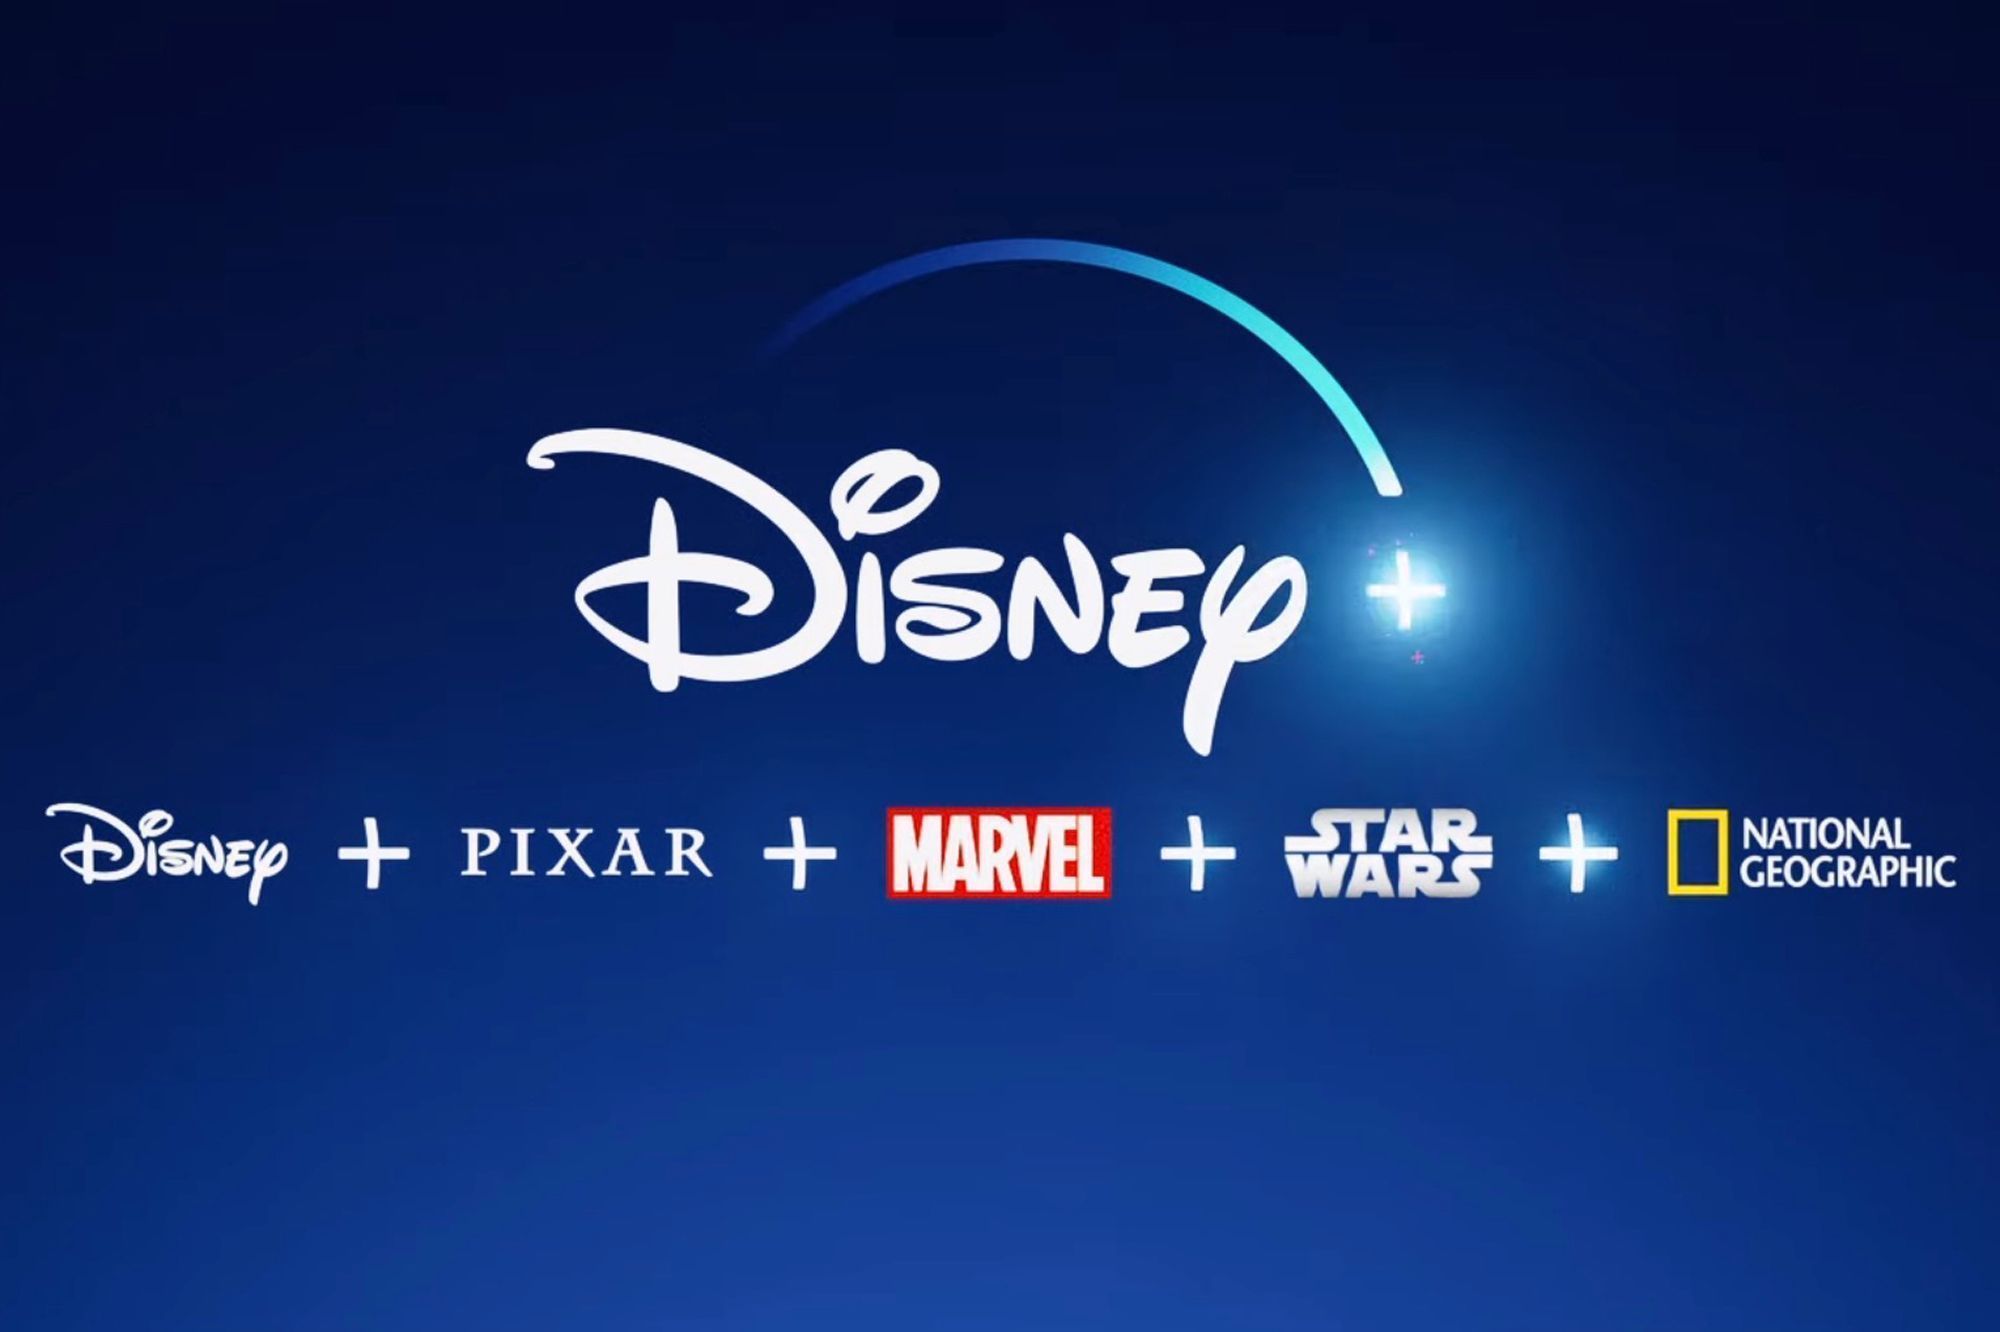 Disney+ devrait atteindre 200 millions d'abonnés en 2025